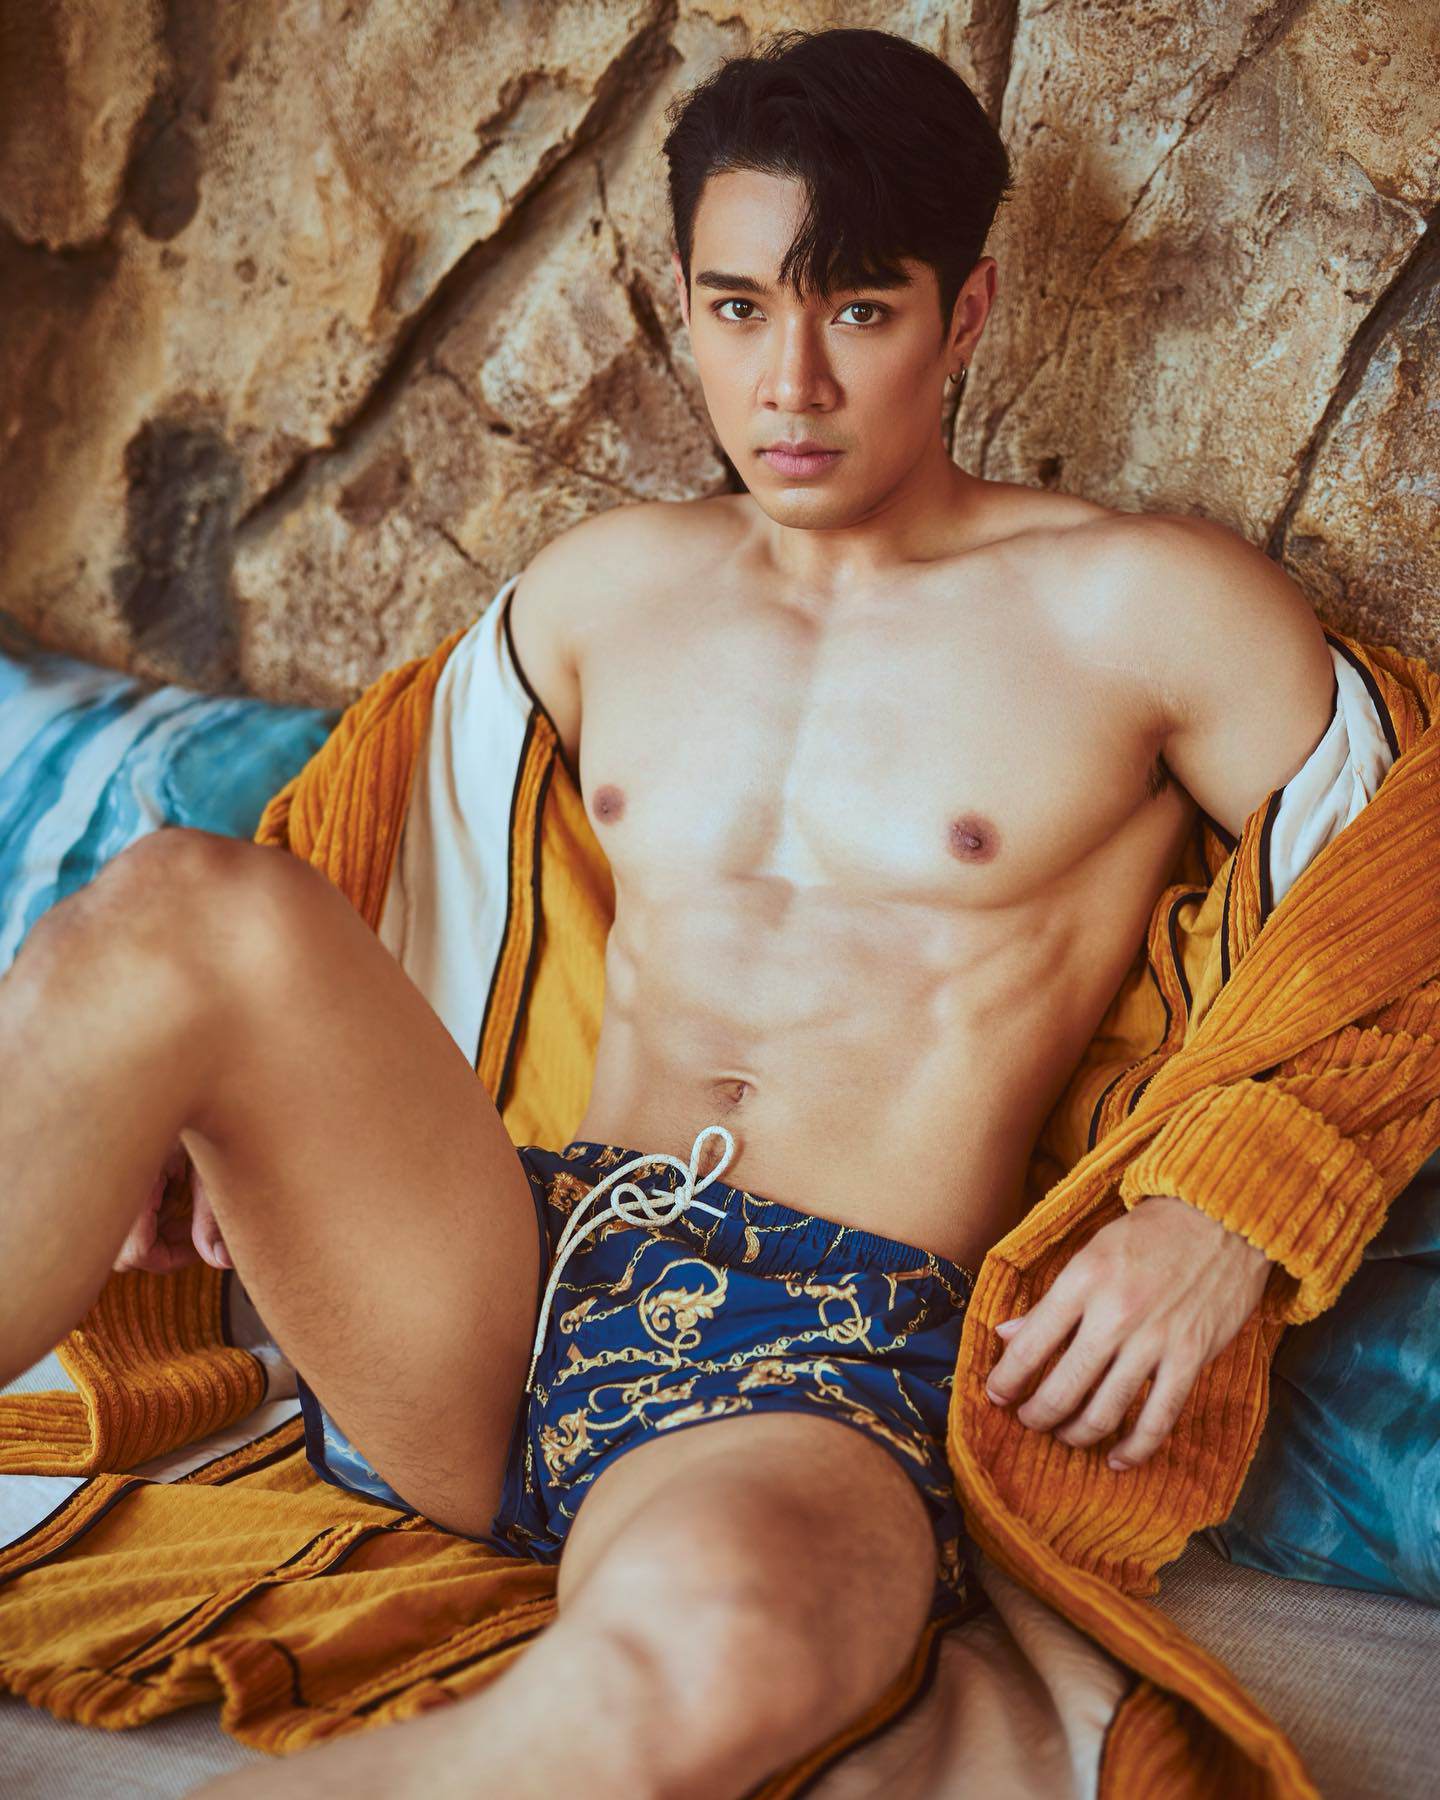 Danh tính trai đẹp 6 múi gây sốt trong MV của Bảo Thy, hóa ra là nam vương Thái Lan - 10